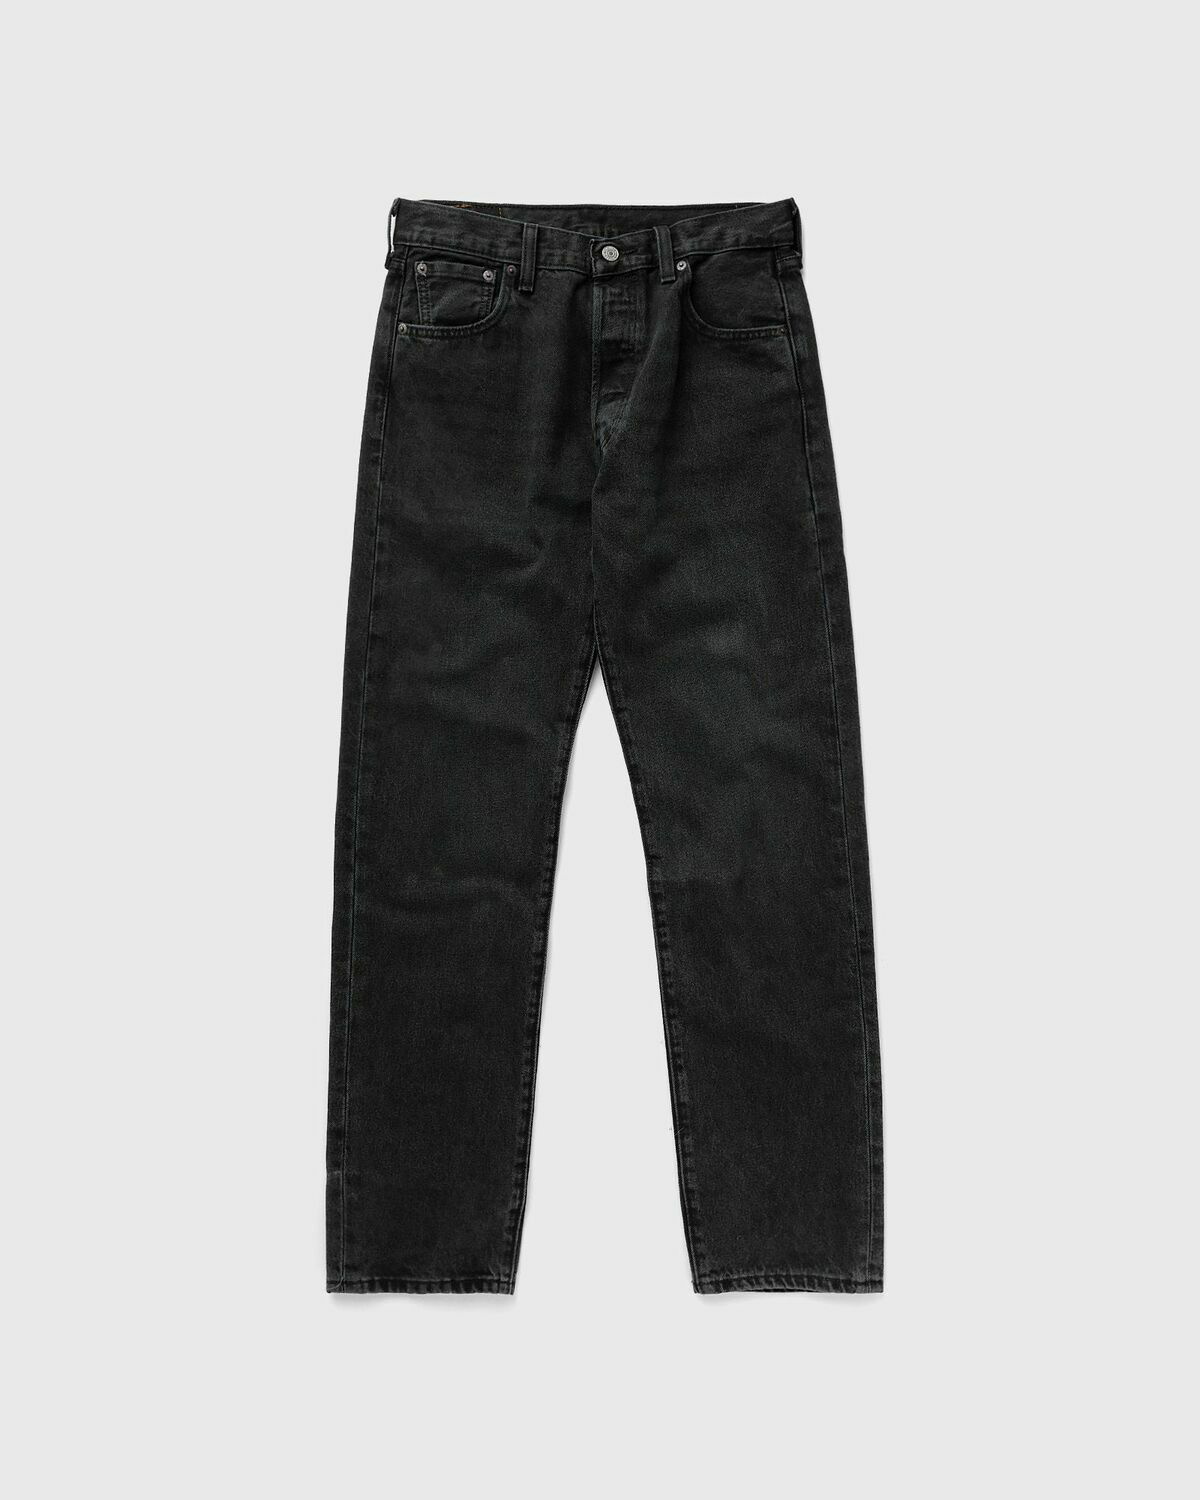 Levis 501 93 Straight Black - Mens - Jeans Levis